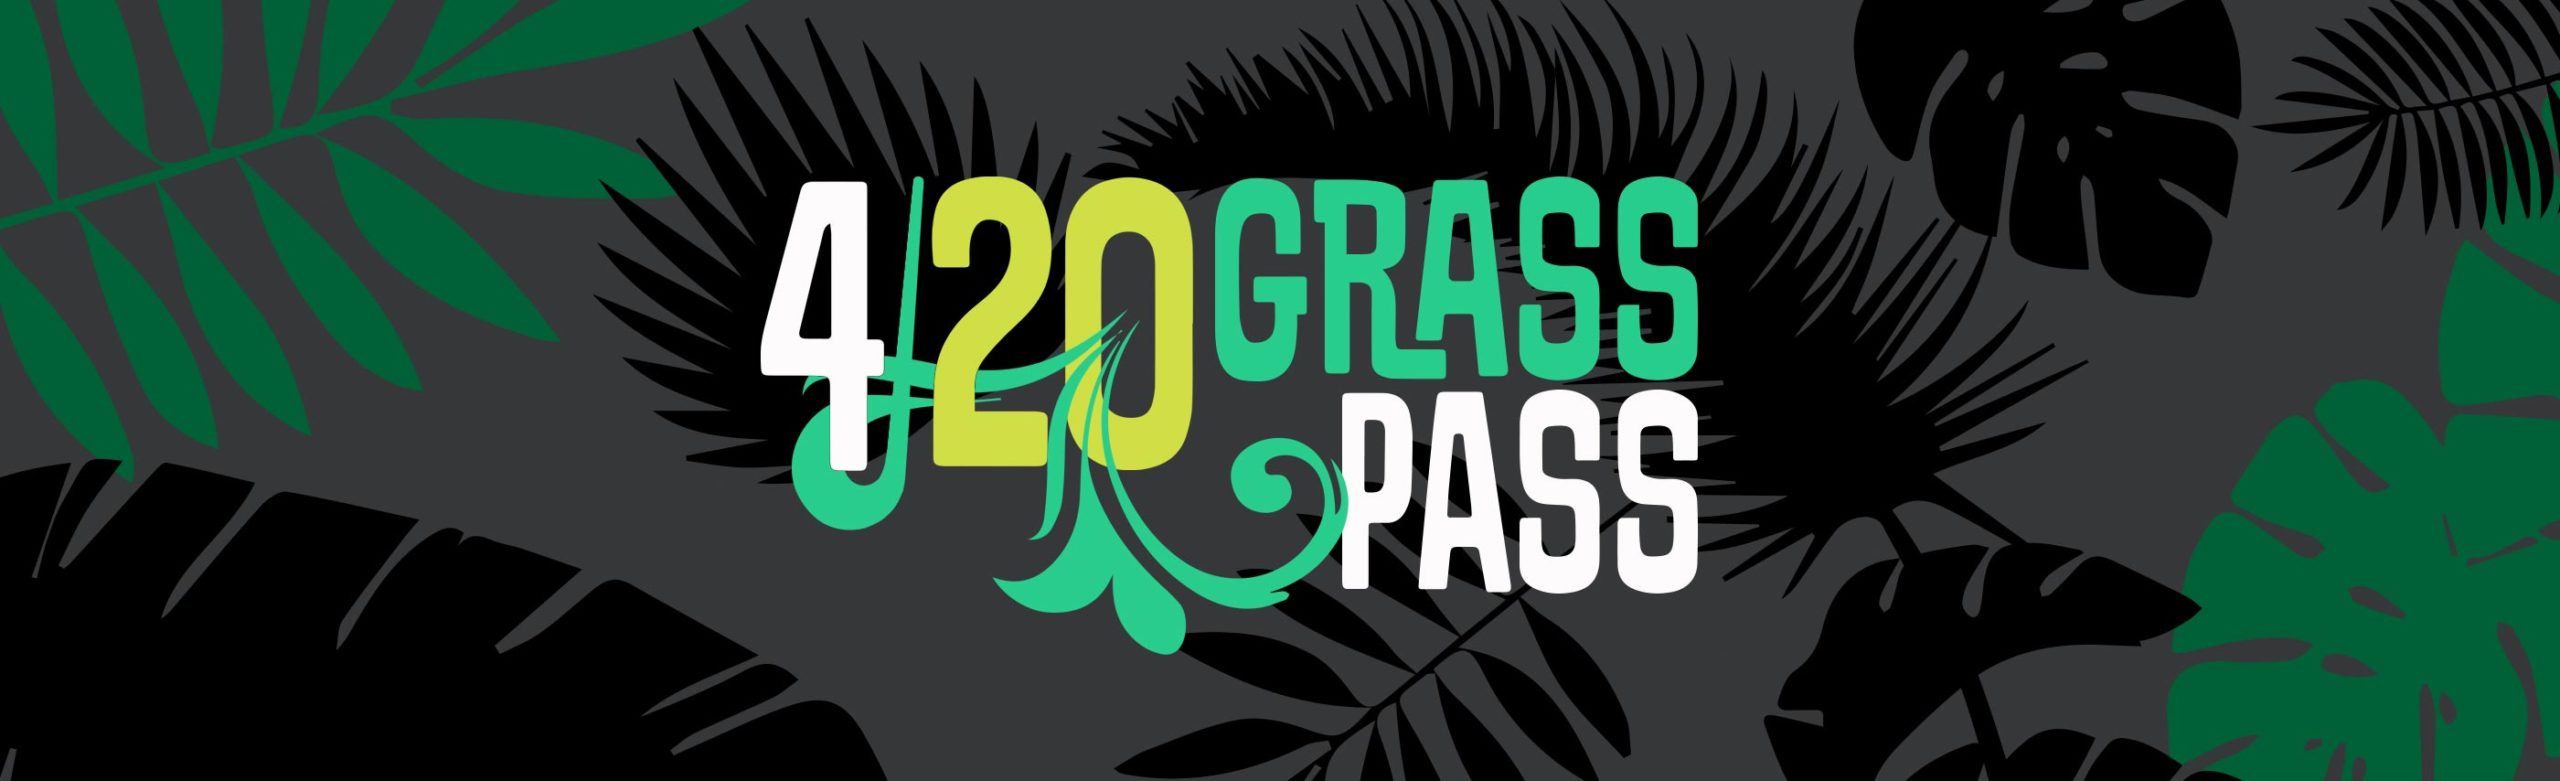 Special Offer The 4/20 Grass Pass Logjam Presents